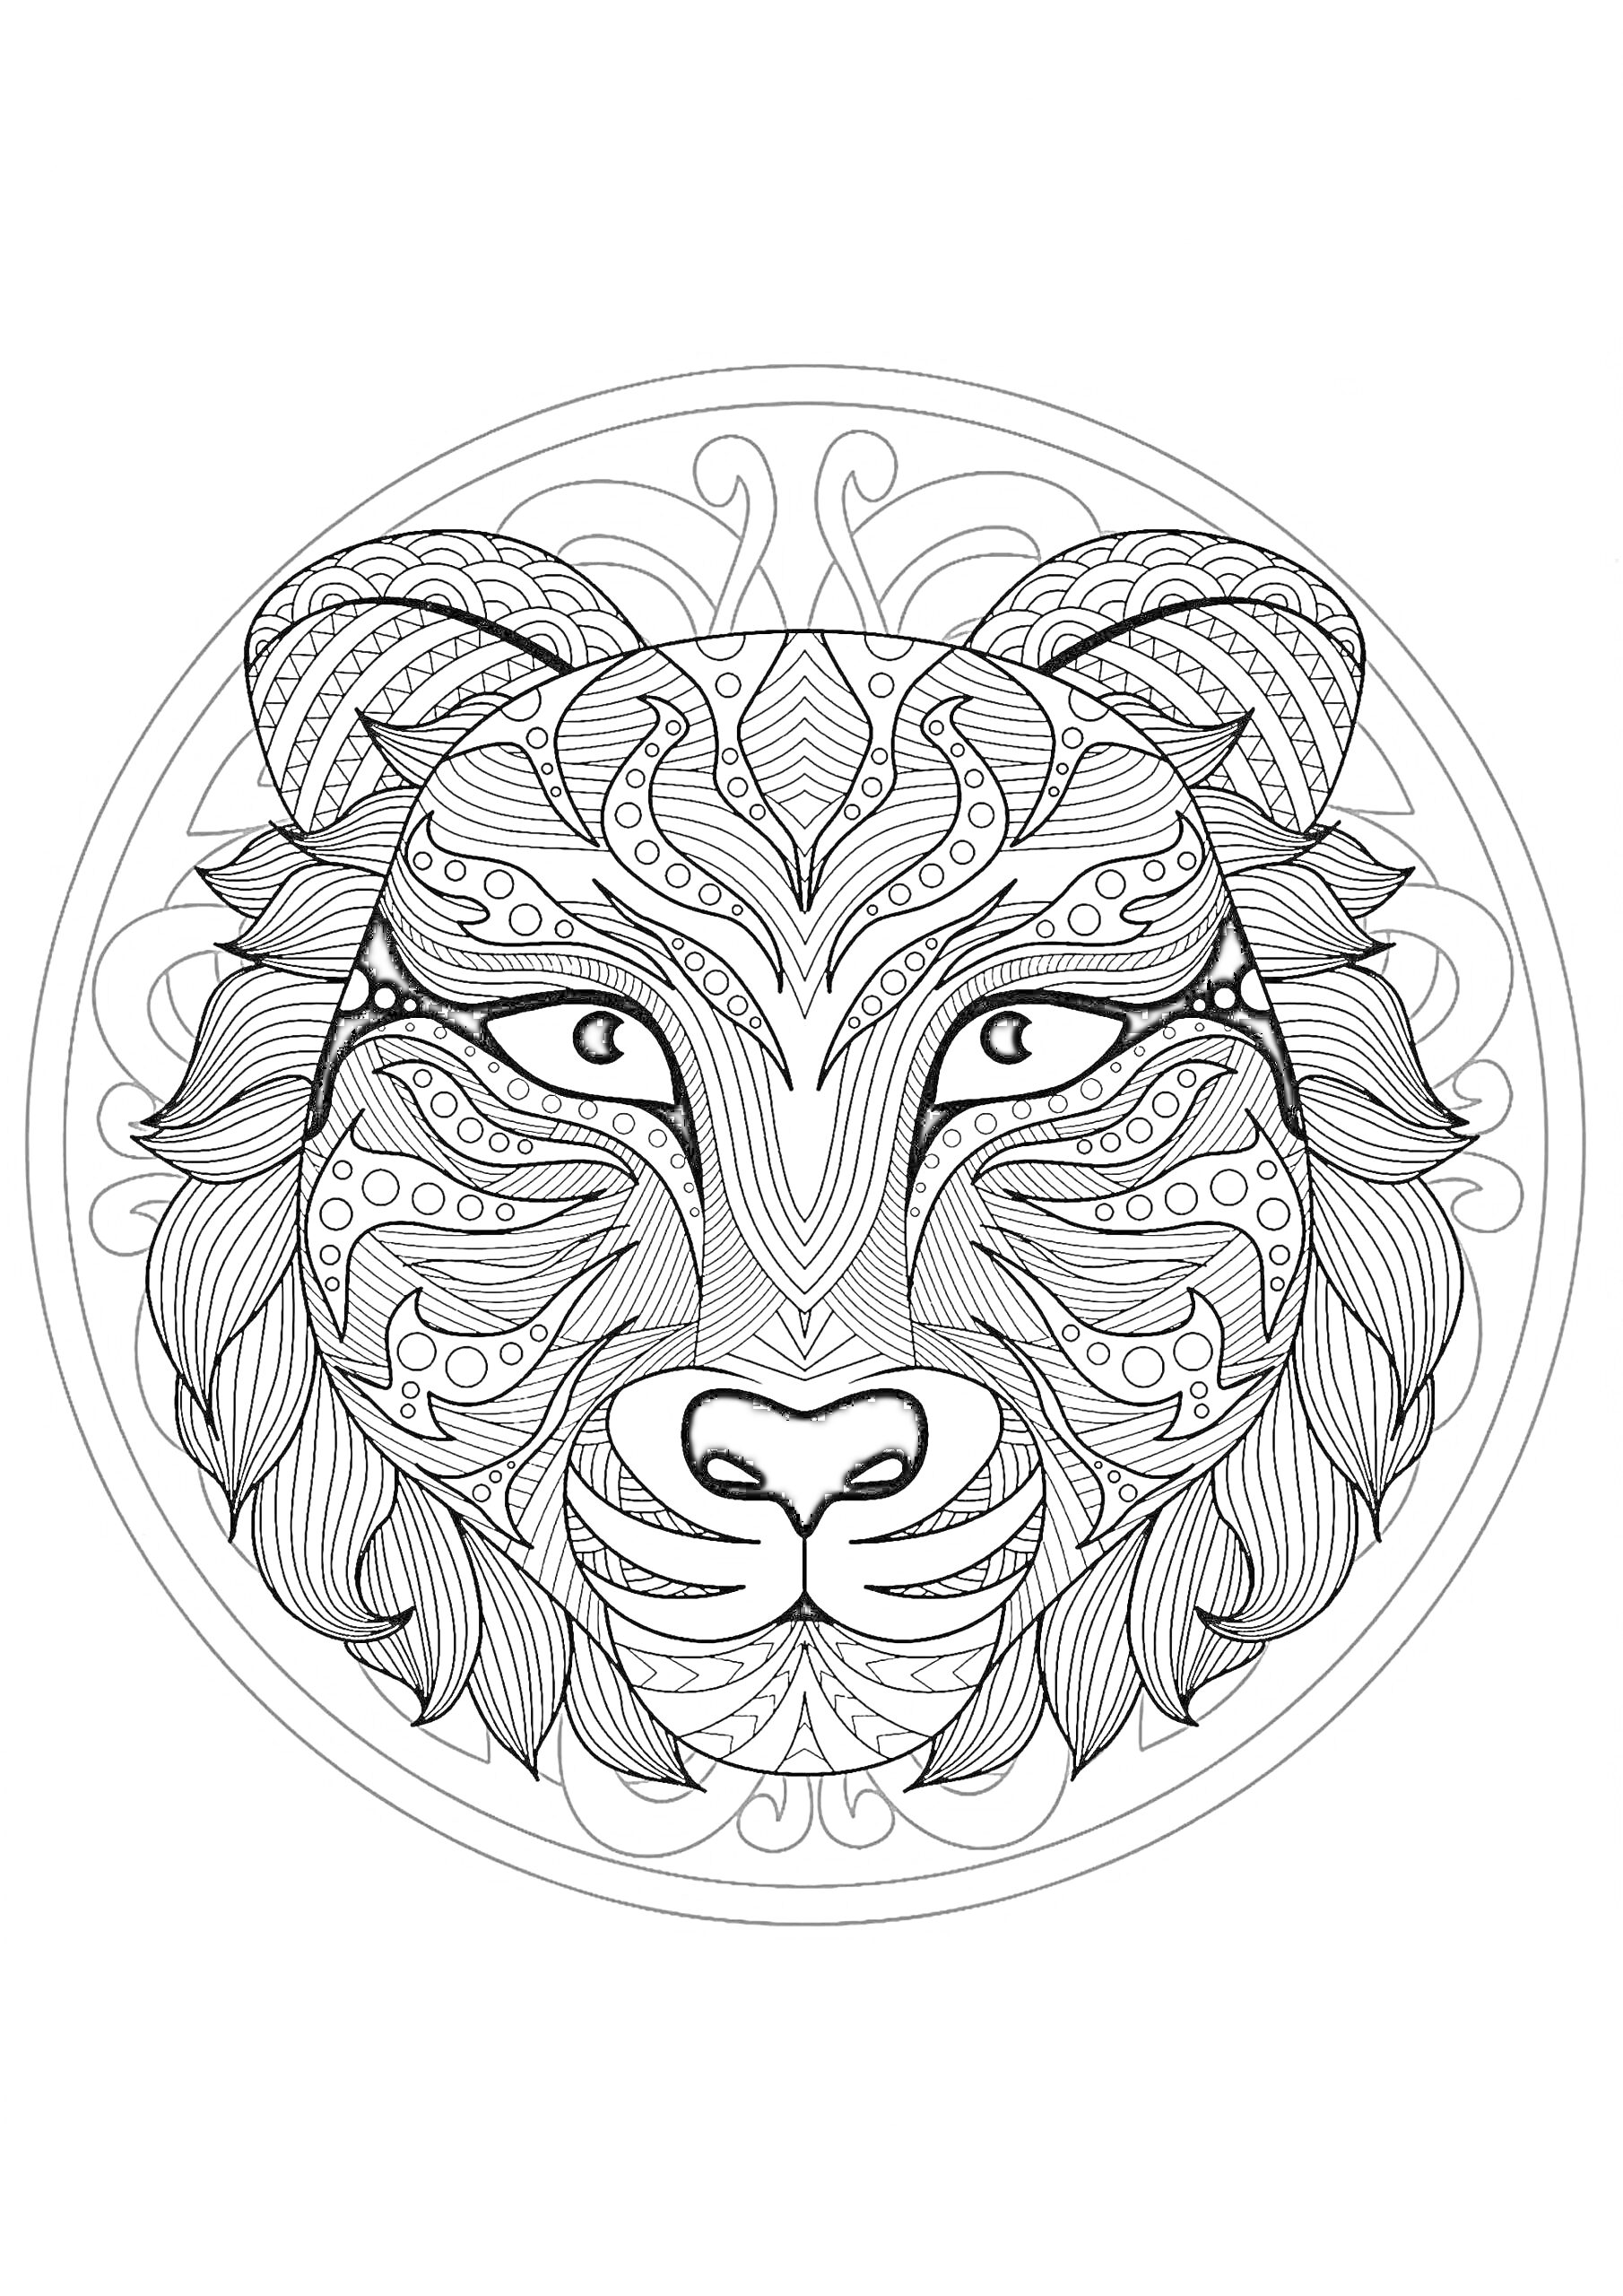 Раскраска Антистресс раскраска, детализированная морда тигра в круге с узорами